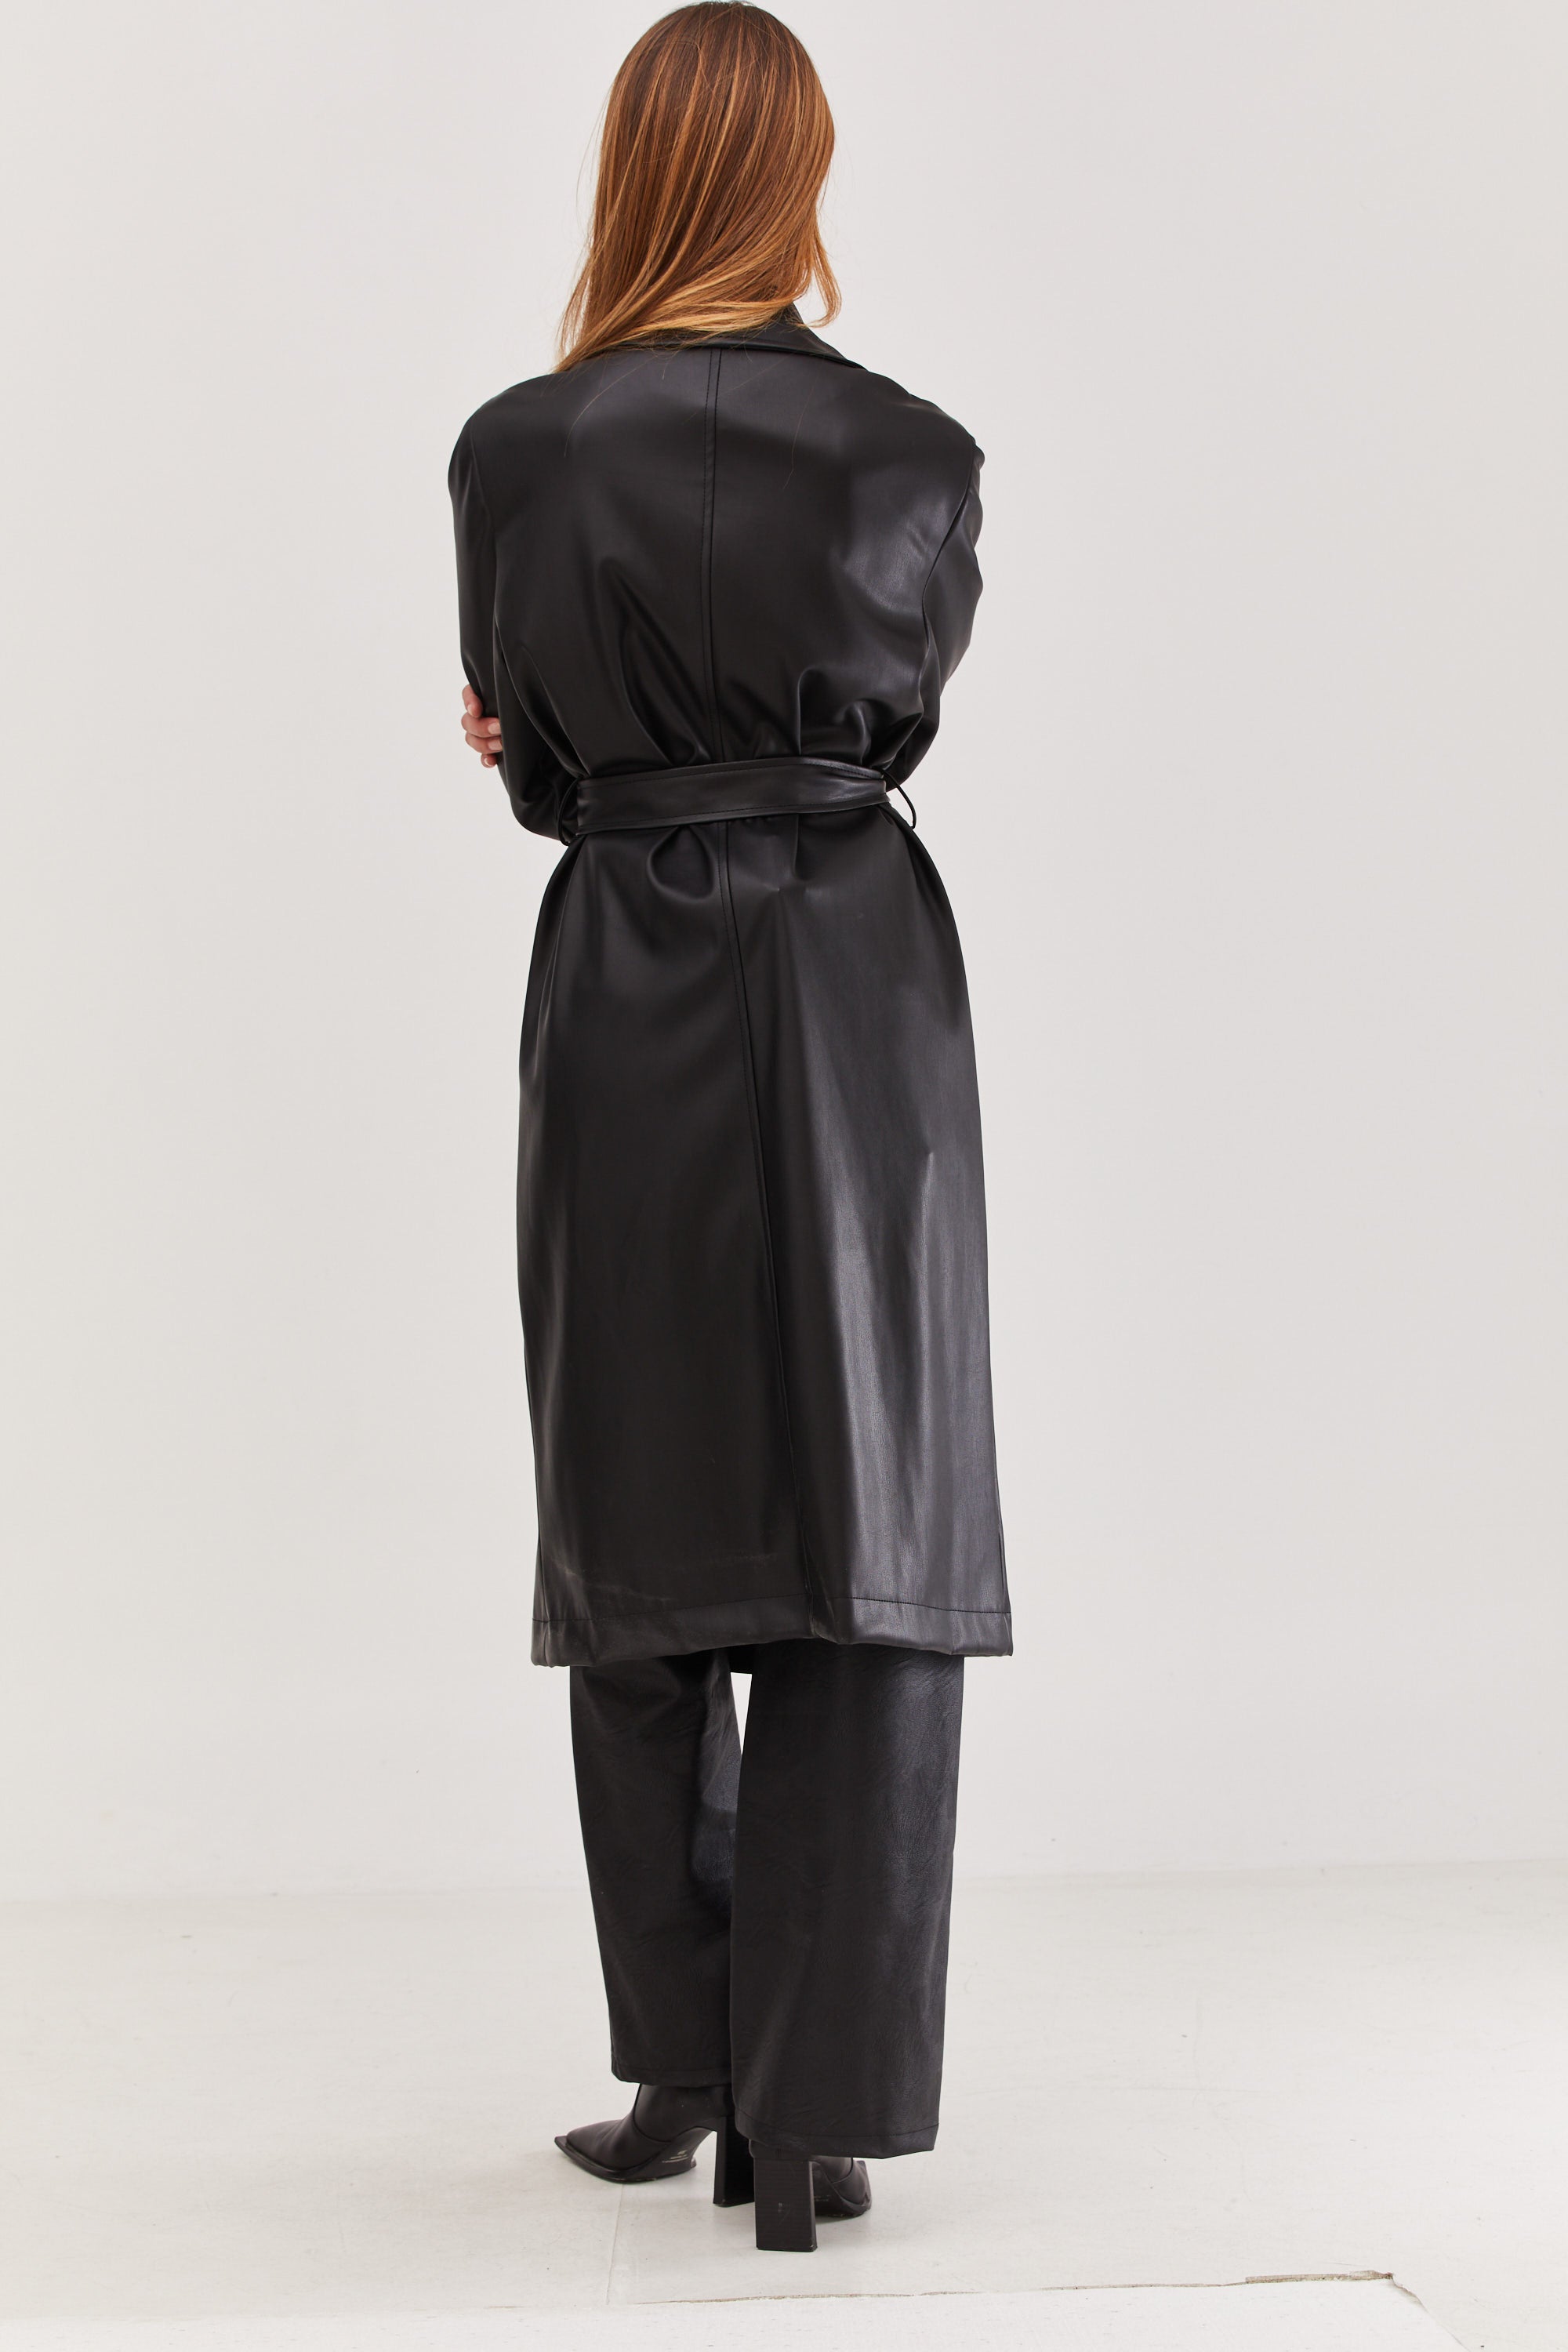 Mia Leather Trench Coat black